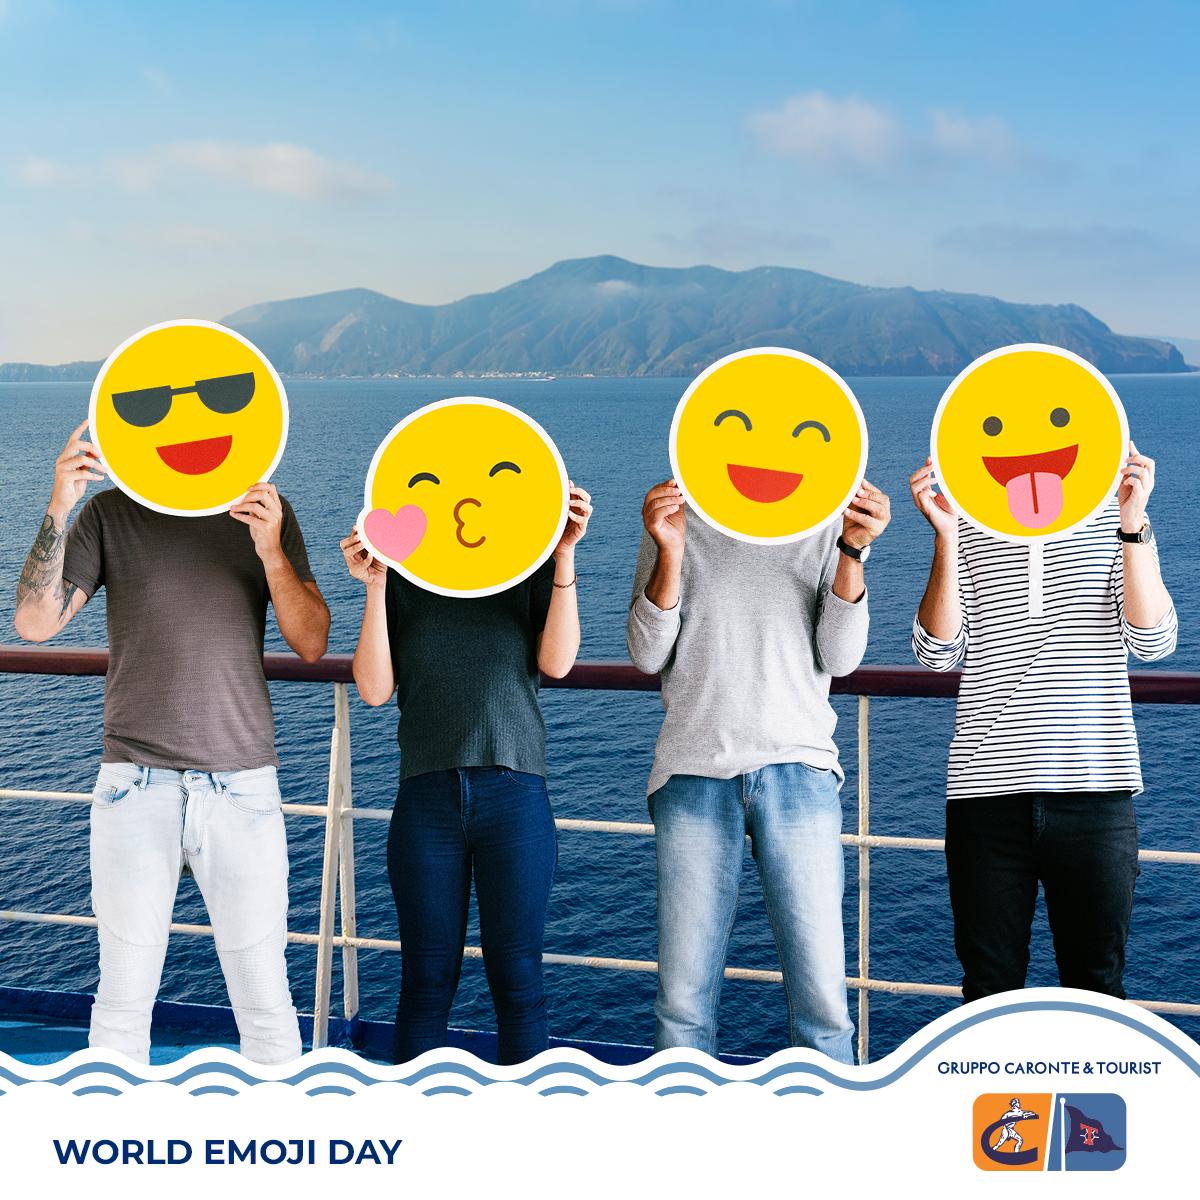 Viaggiare è un'ondata di emozioni.
Raccontateci le vostre... usando le emoji!

😎😘😄😛Buon #EmojiDay!

#carontetourist #siremar